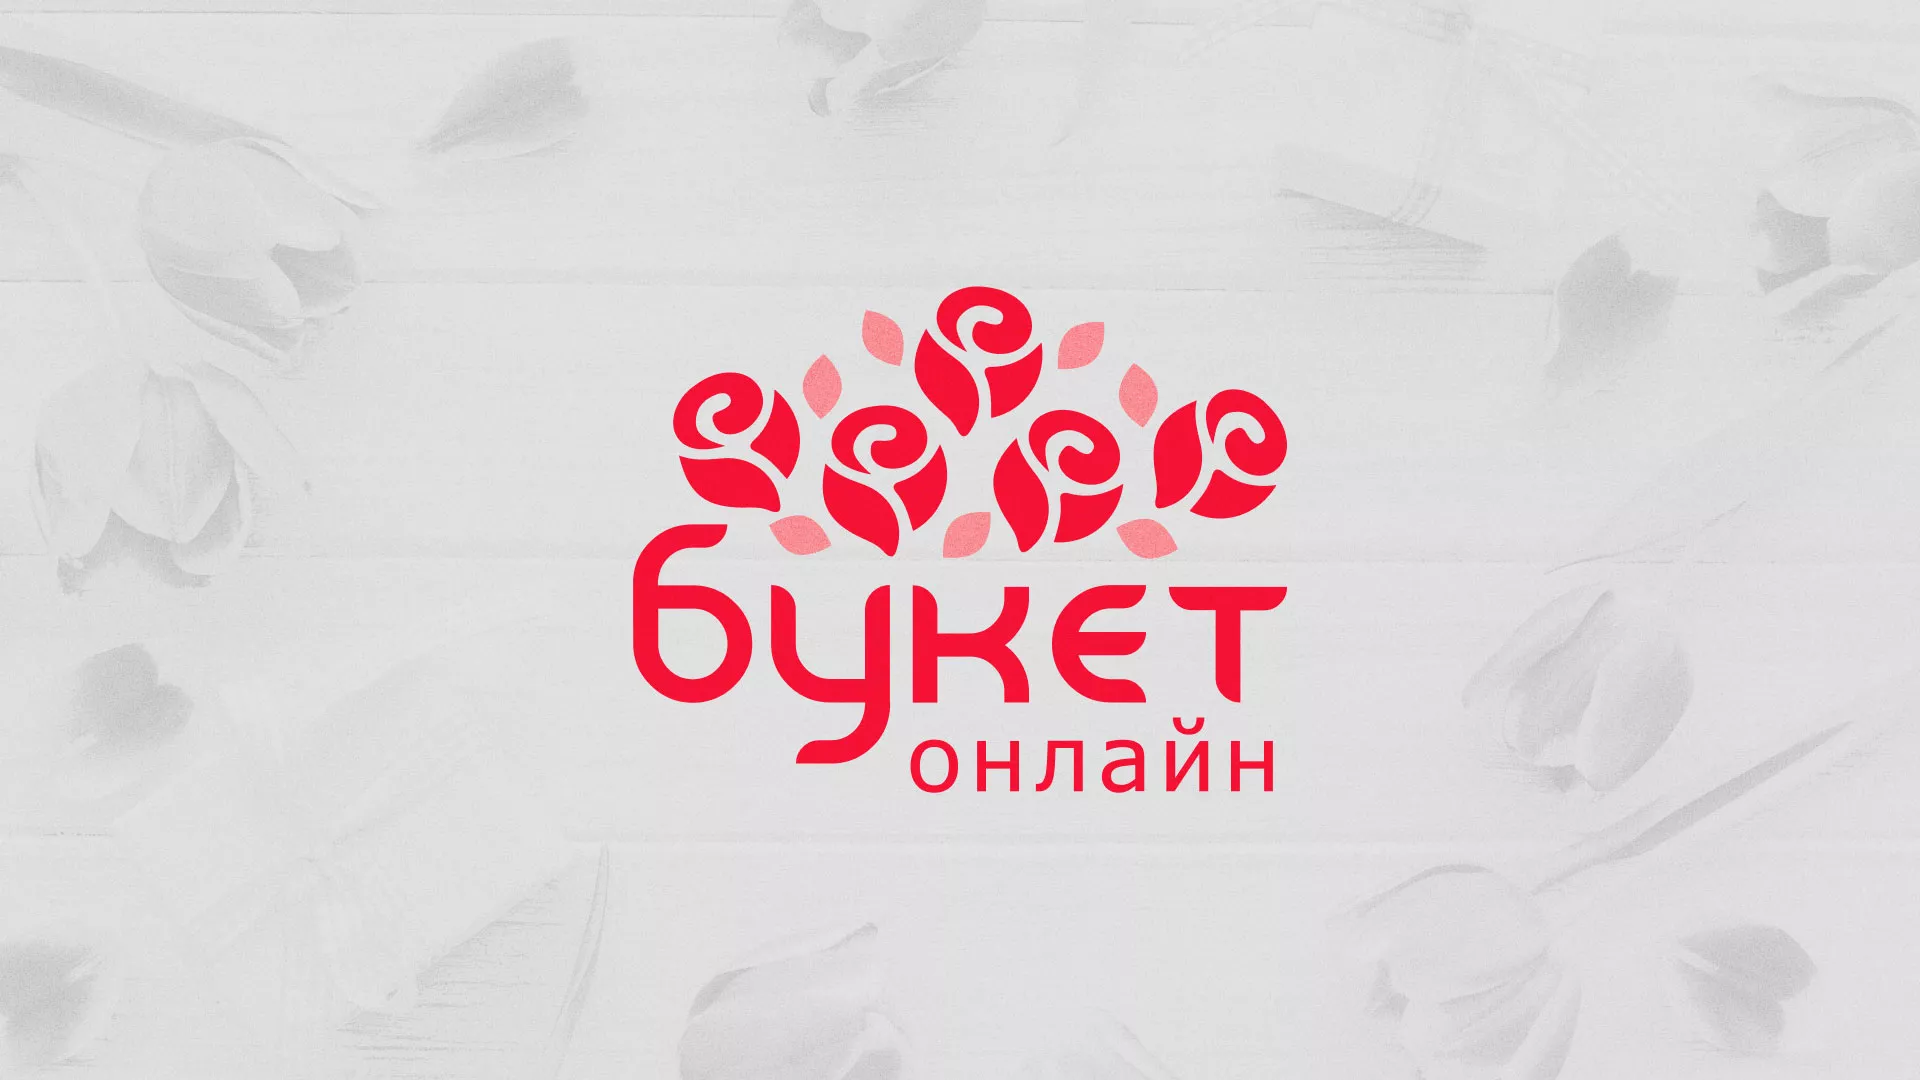 Создание интернет-магазина «Букет-онлайн» по цветам в Егорьевске